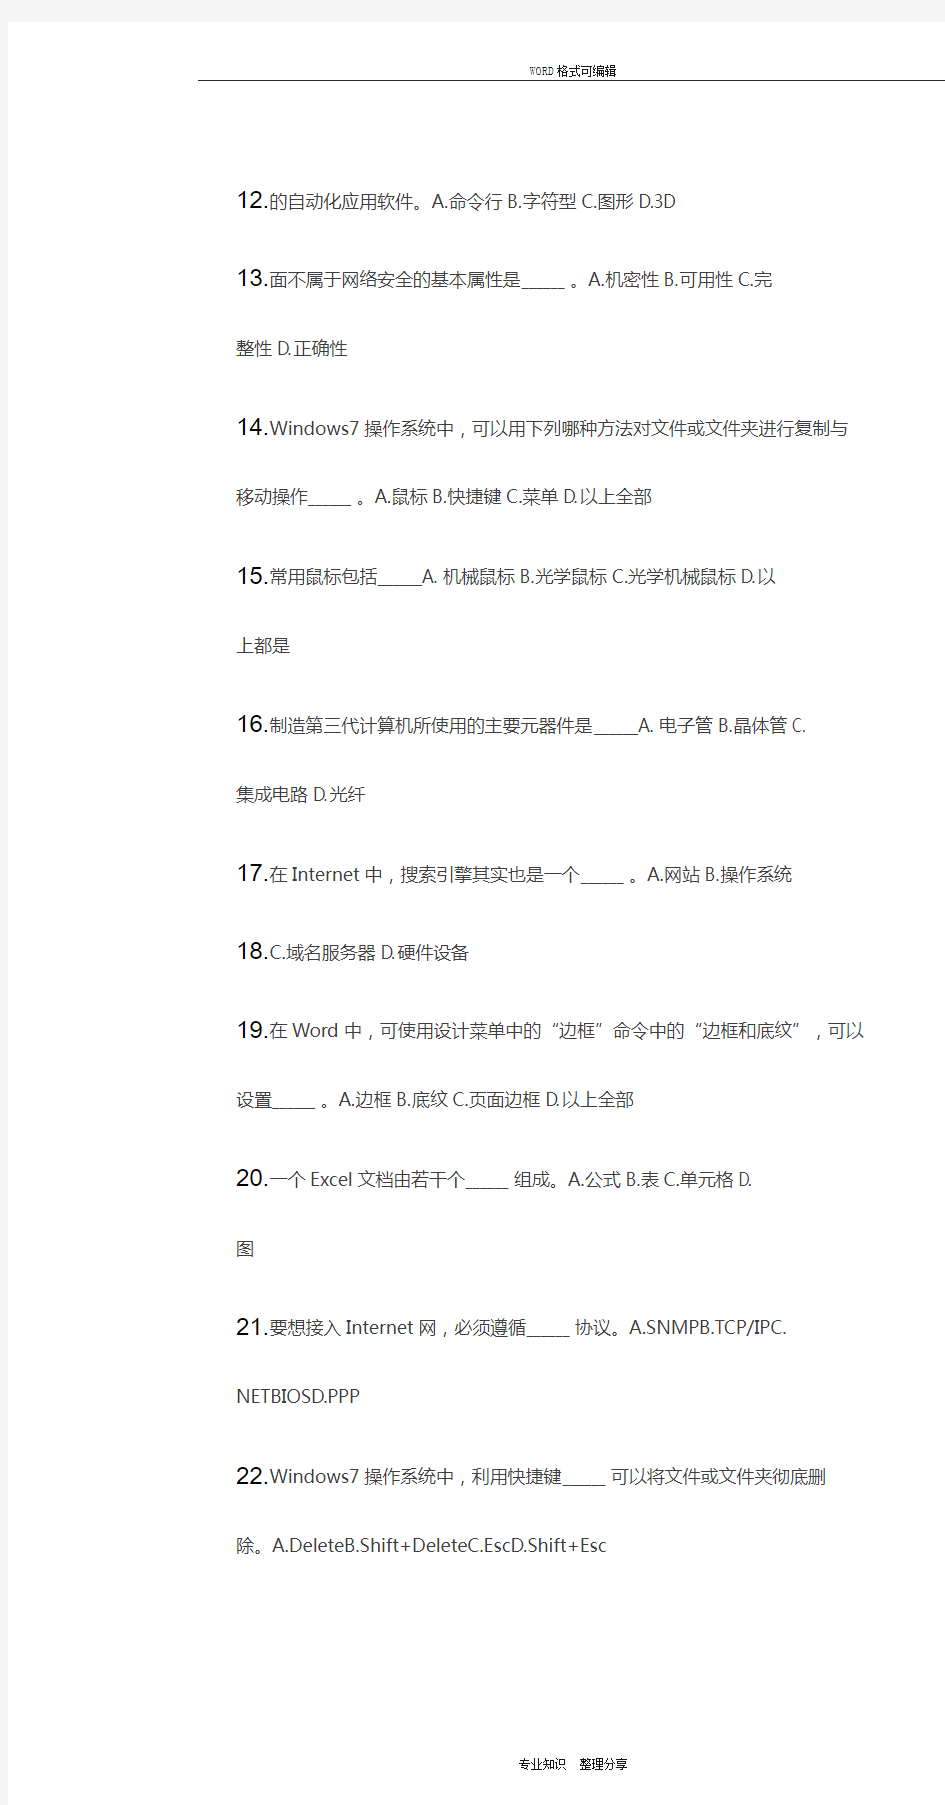 重庆大学网教作业答案-计算机基础(第2次)